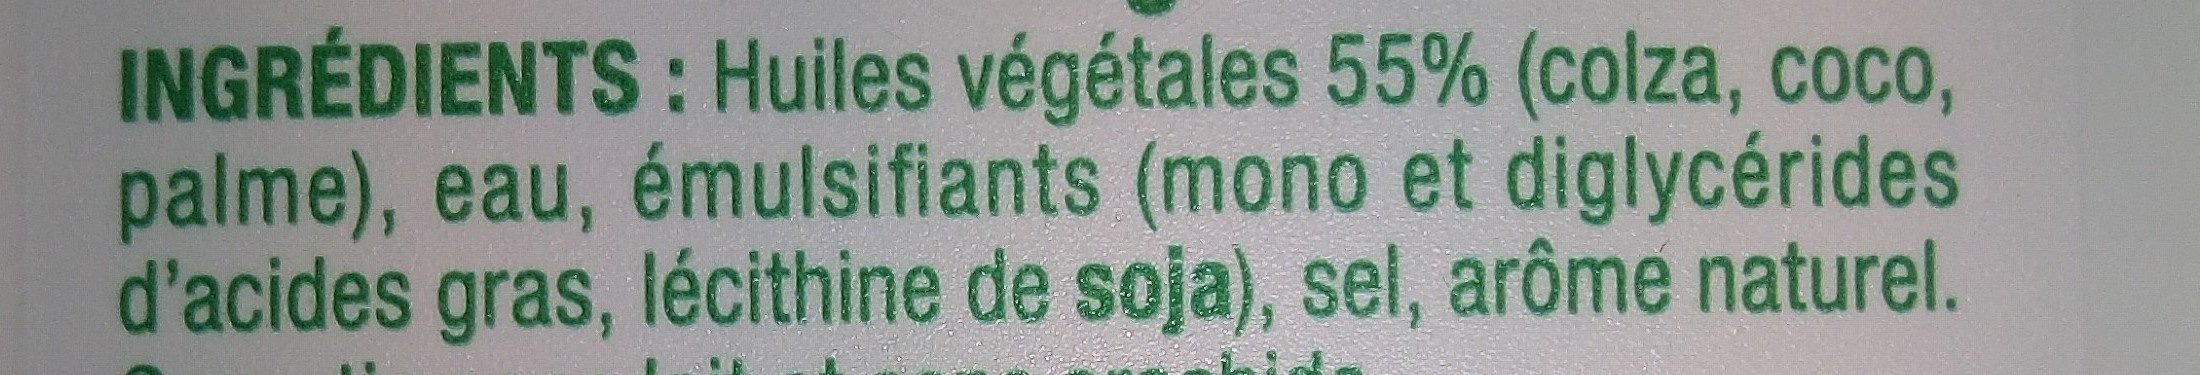 St hubert pur vegetal 275 g dx - Ingredientes - fr